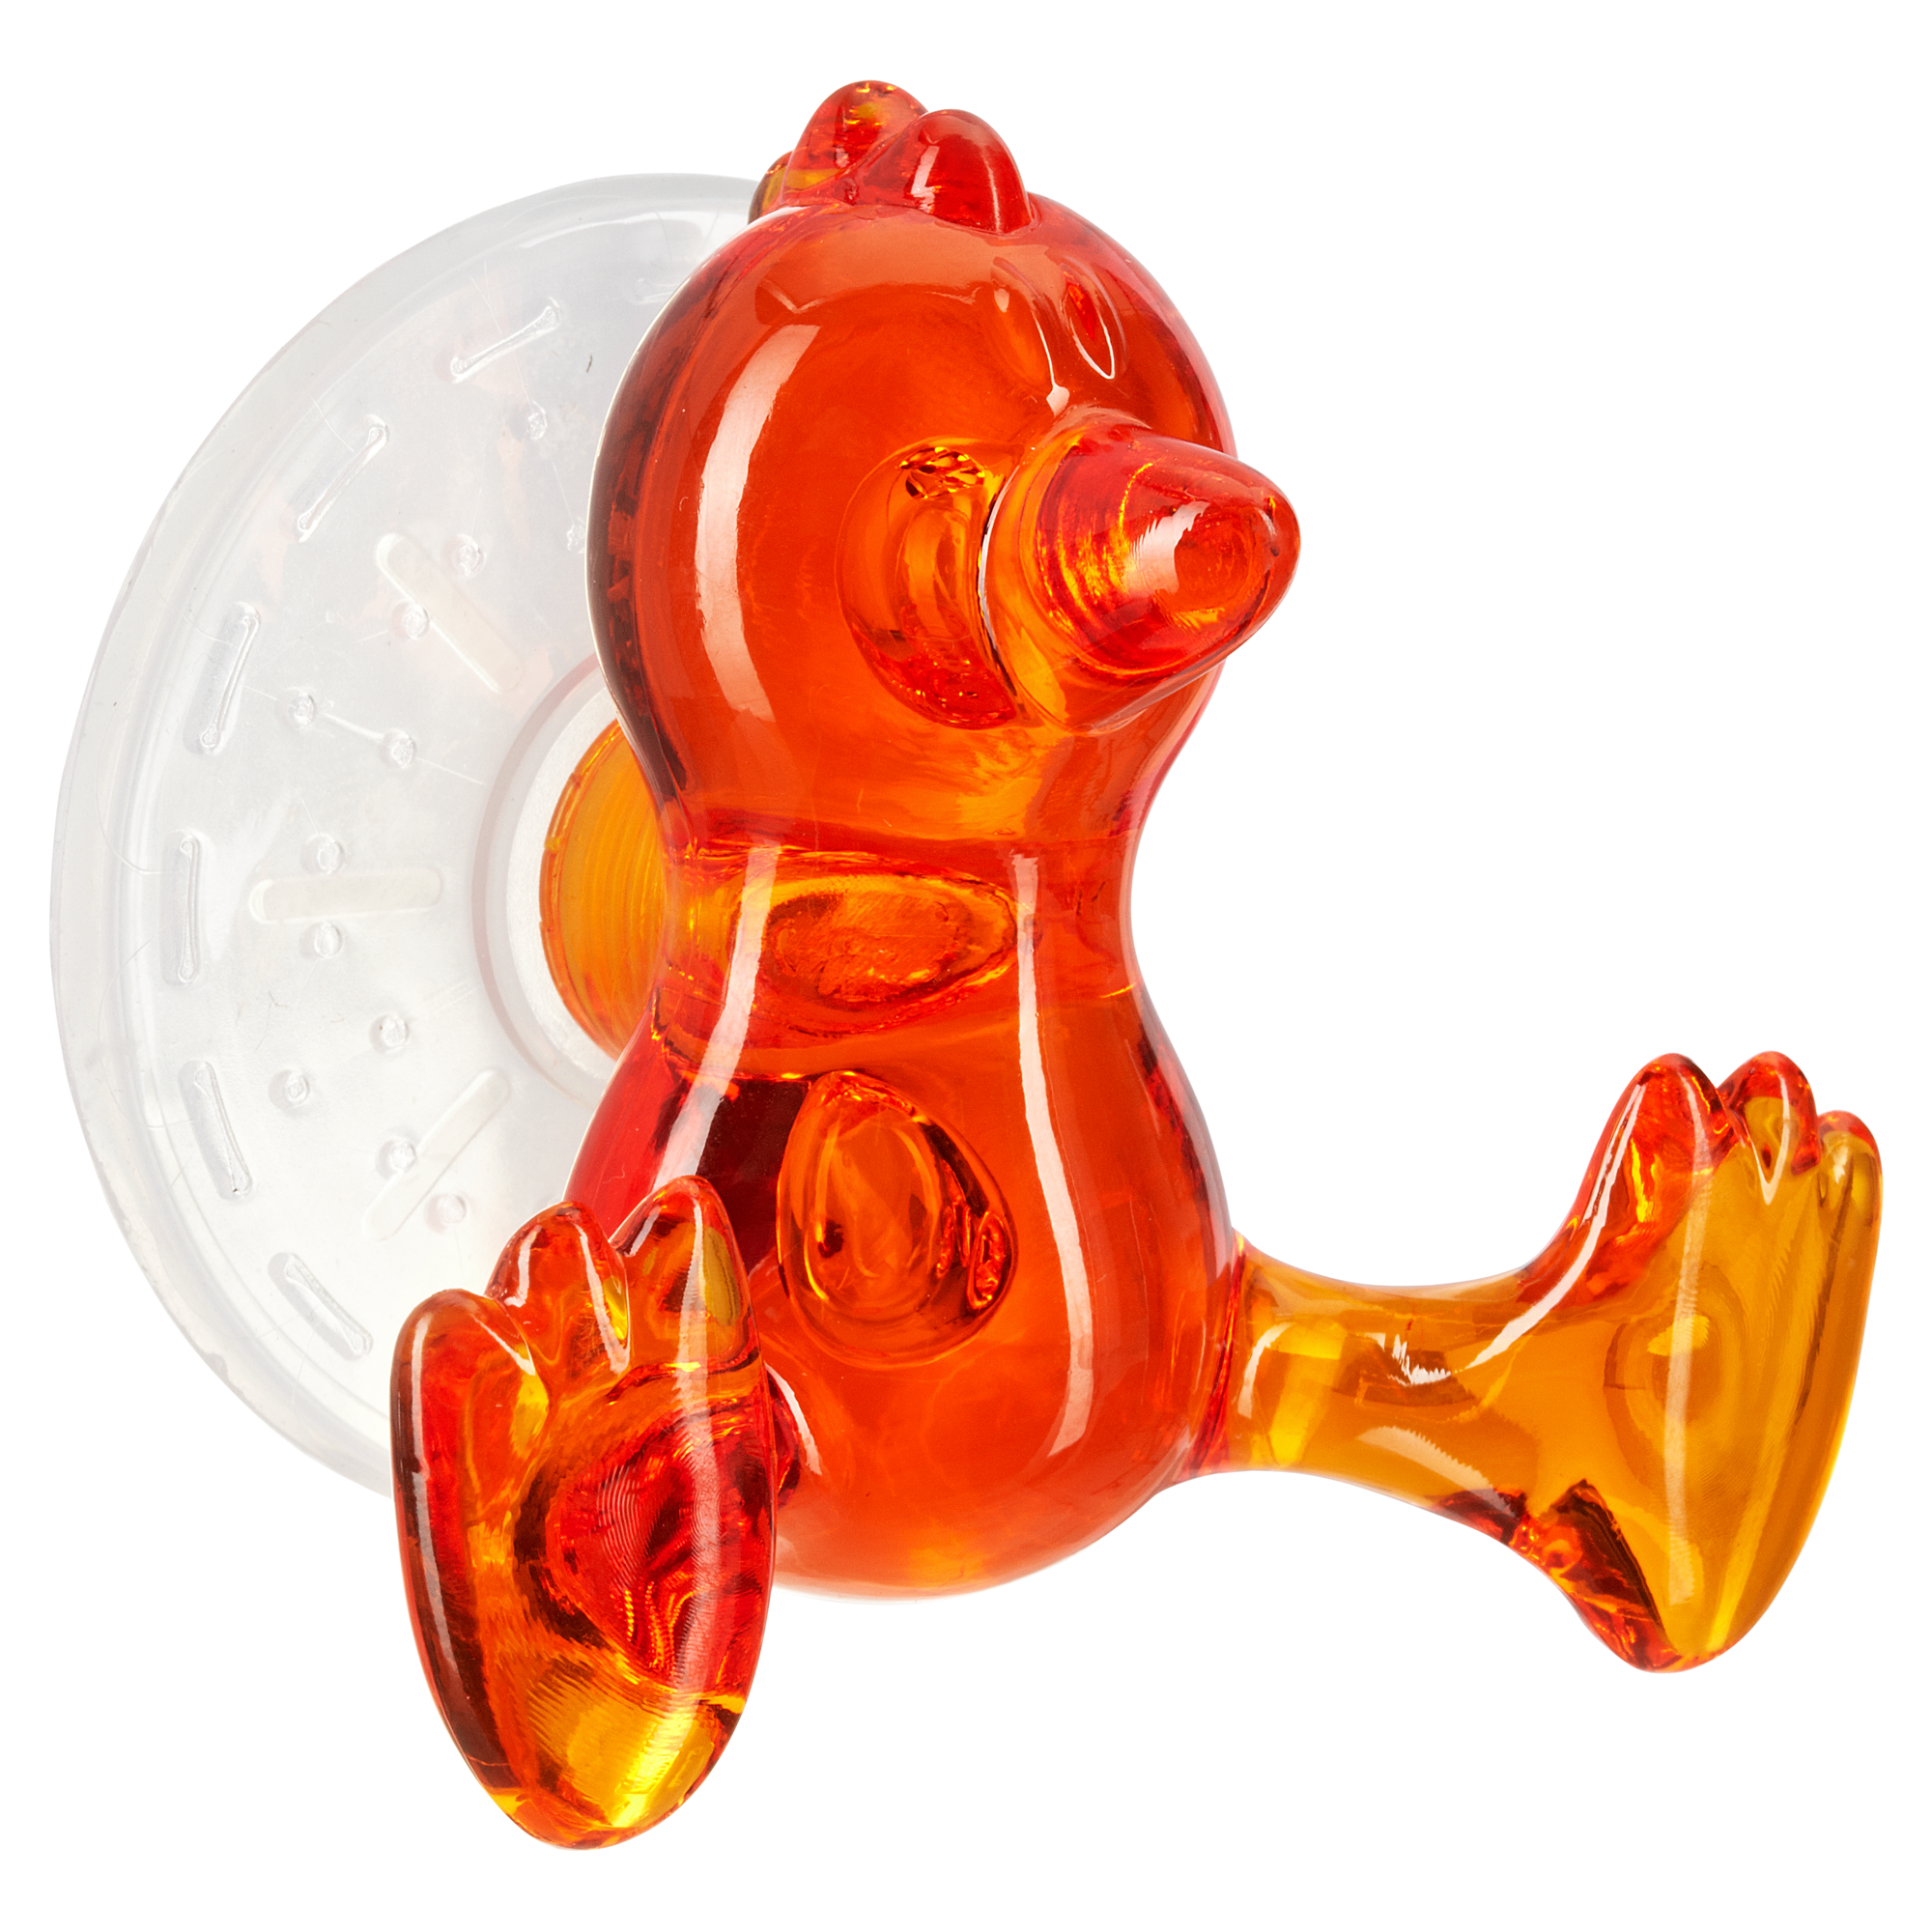 Kleine Wolke Saughaken 'Crazy Hooks' Baby Bird, orange + product picture